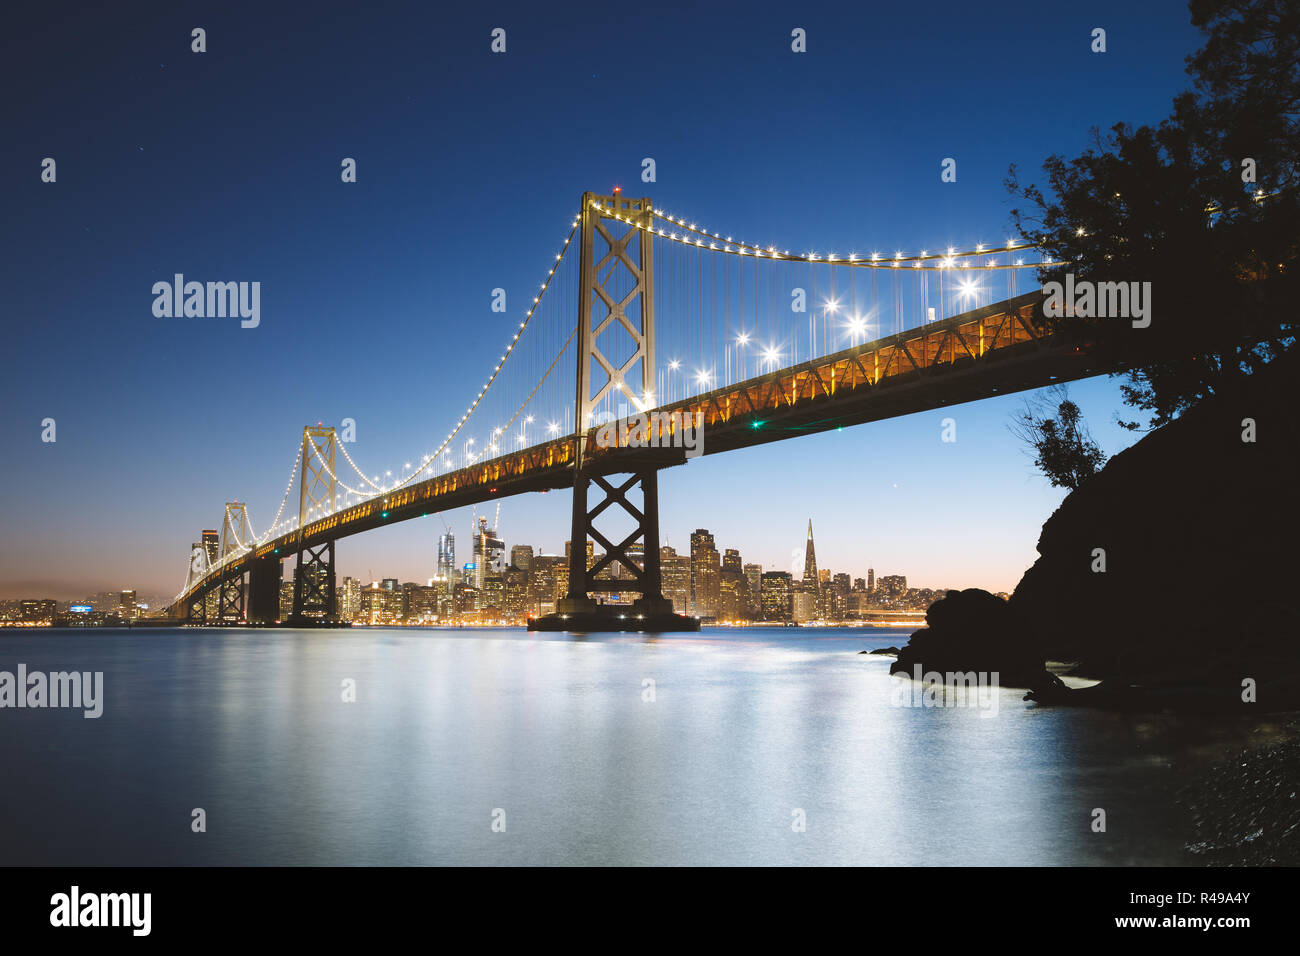 Visualizzazione classica della skyline di San Francisco con il famoso Oakland Bay Bridge illuminato nel bellissimo crepuscolo serale al tramonto in estate, San Francisco Foto Stock